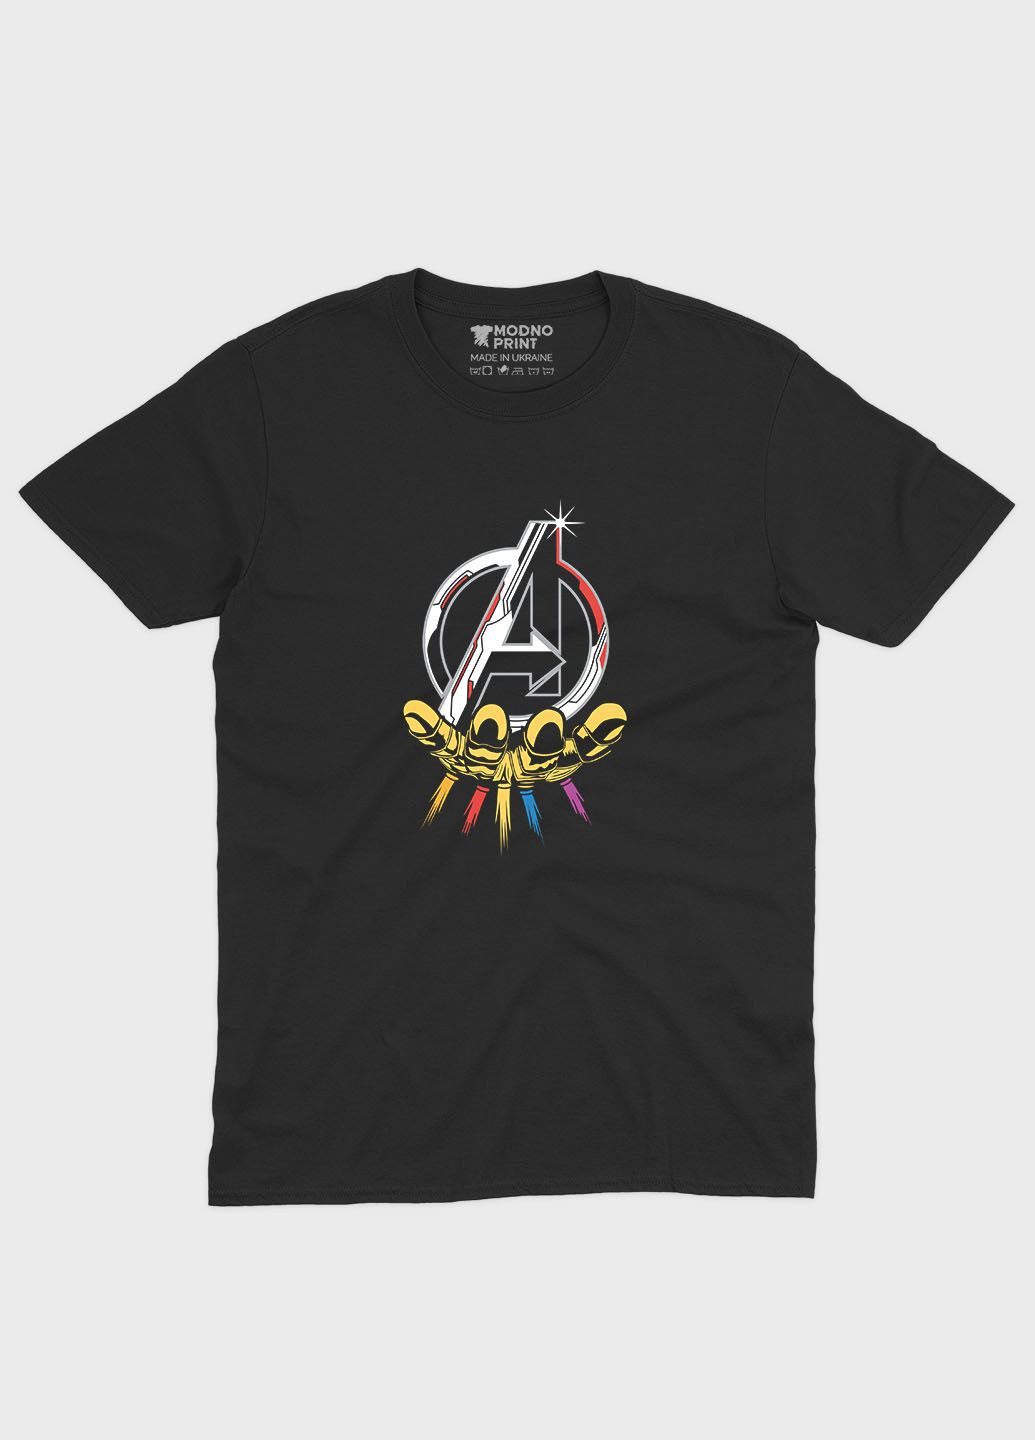 Чорна демісезонна футболка для хлопчика з принтом супергероями - месники (ts001-1-bl-006-025-010-b) Modno